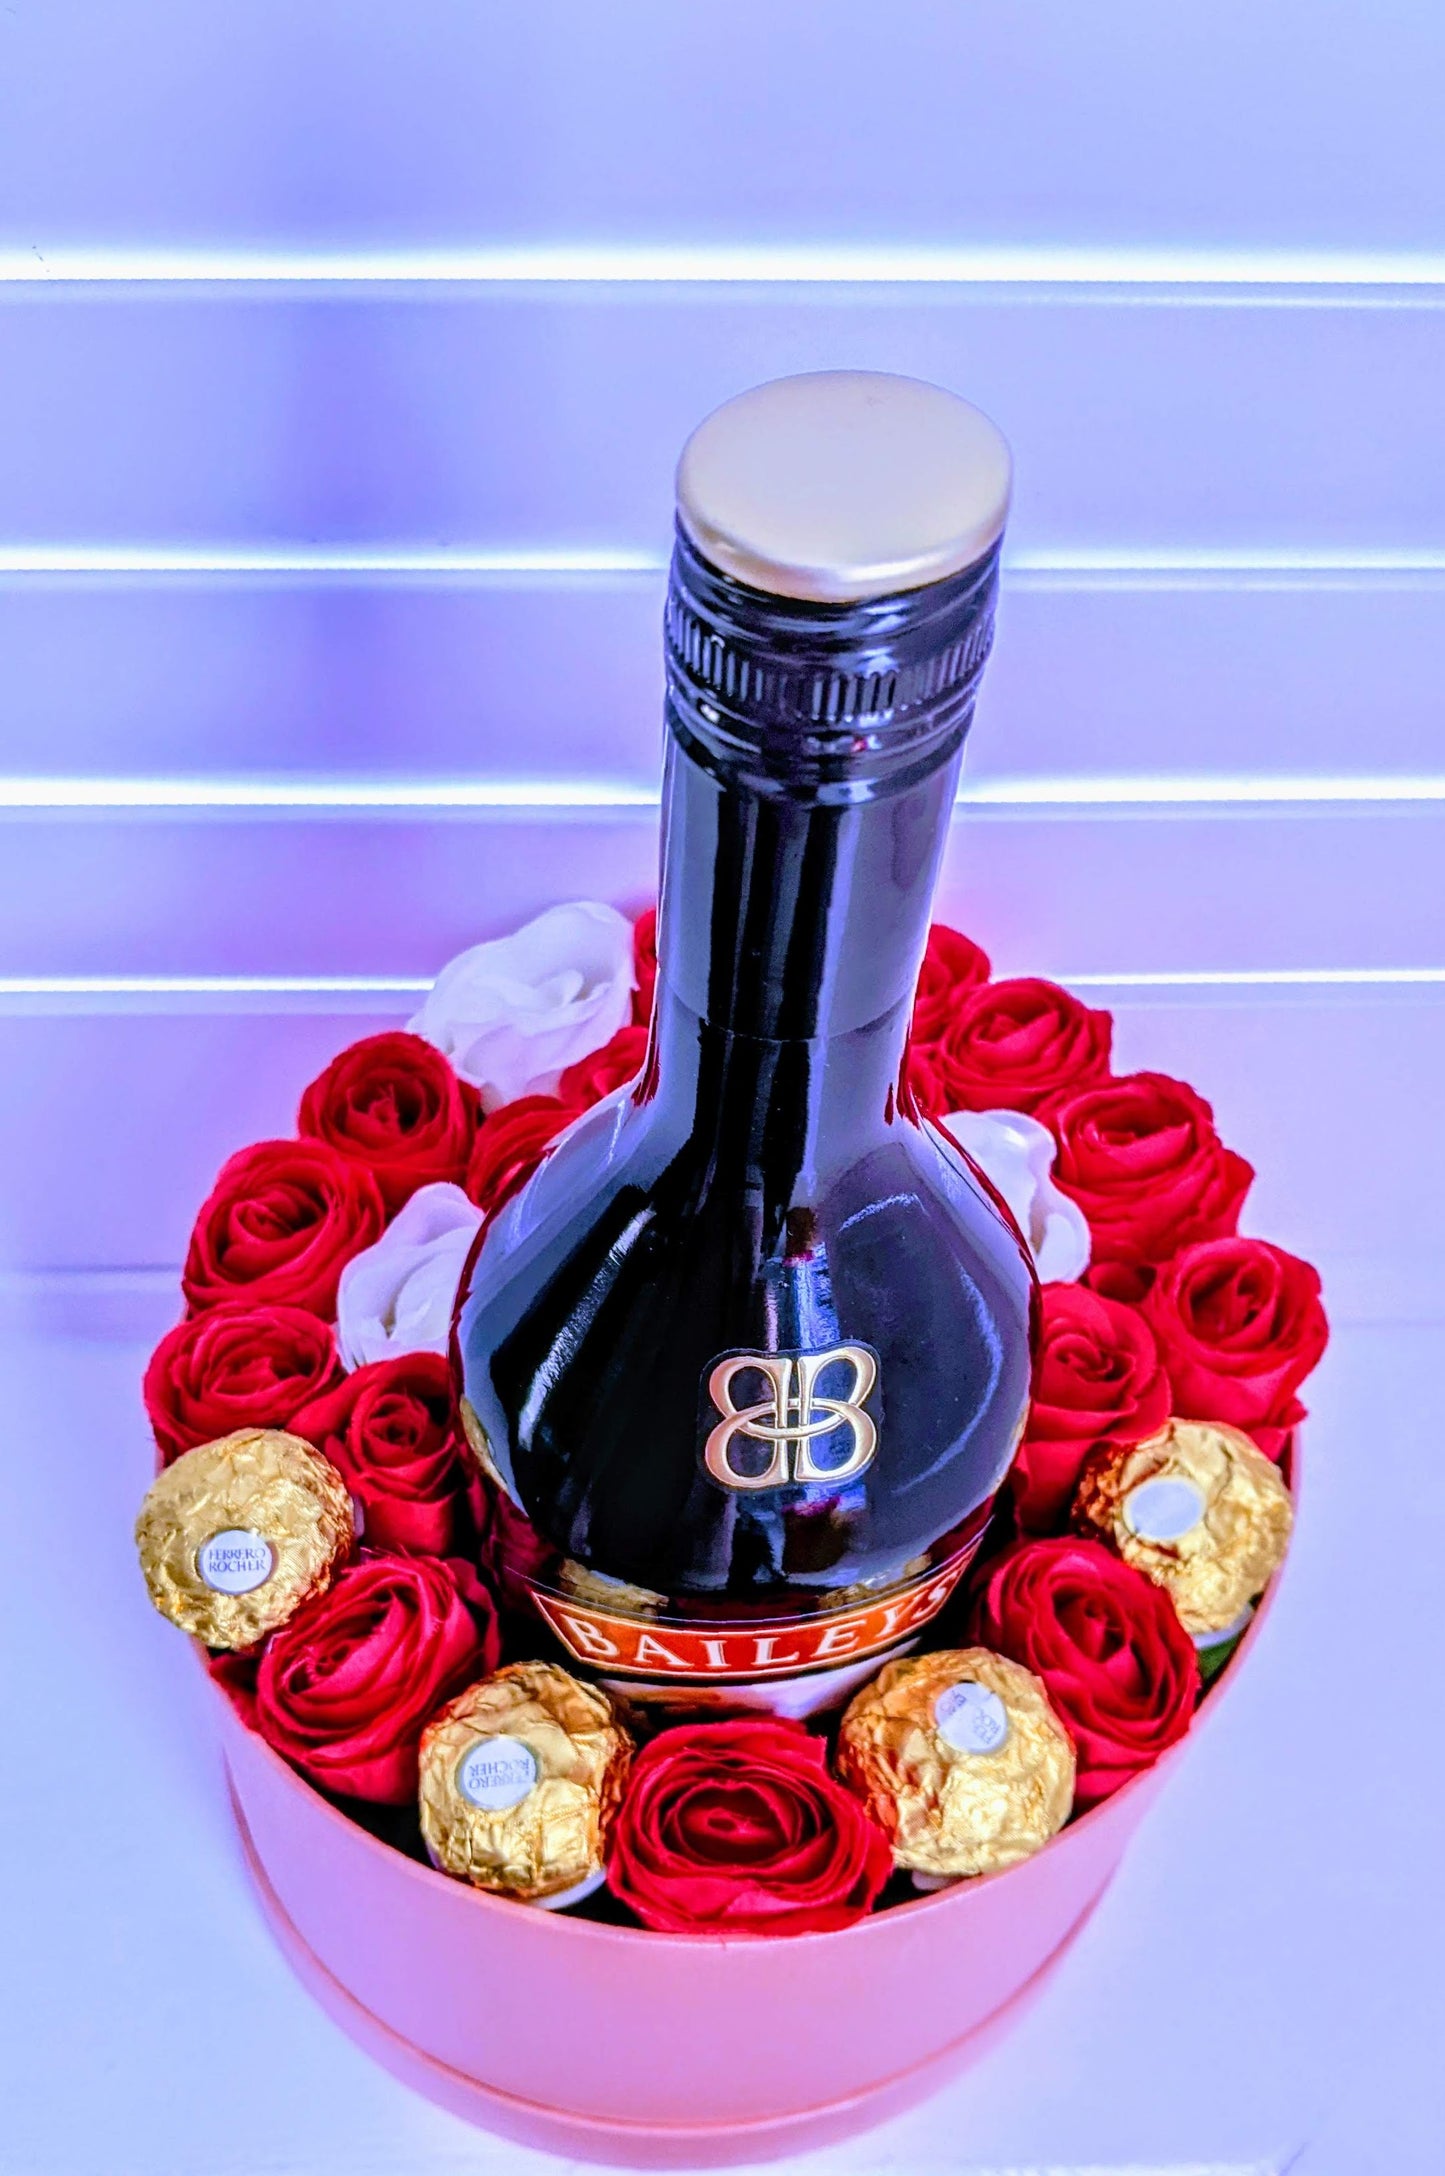 Luxury Hat Box with Bailey's Irish Cream, Silk Roses & Ferrero Rocher